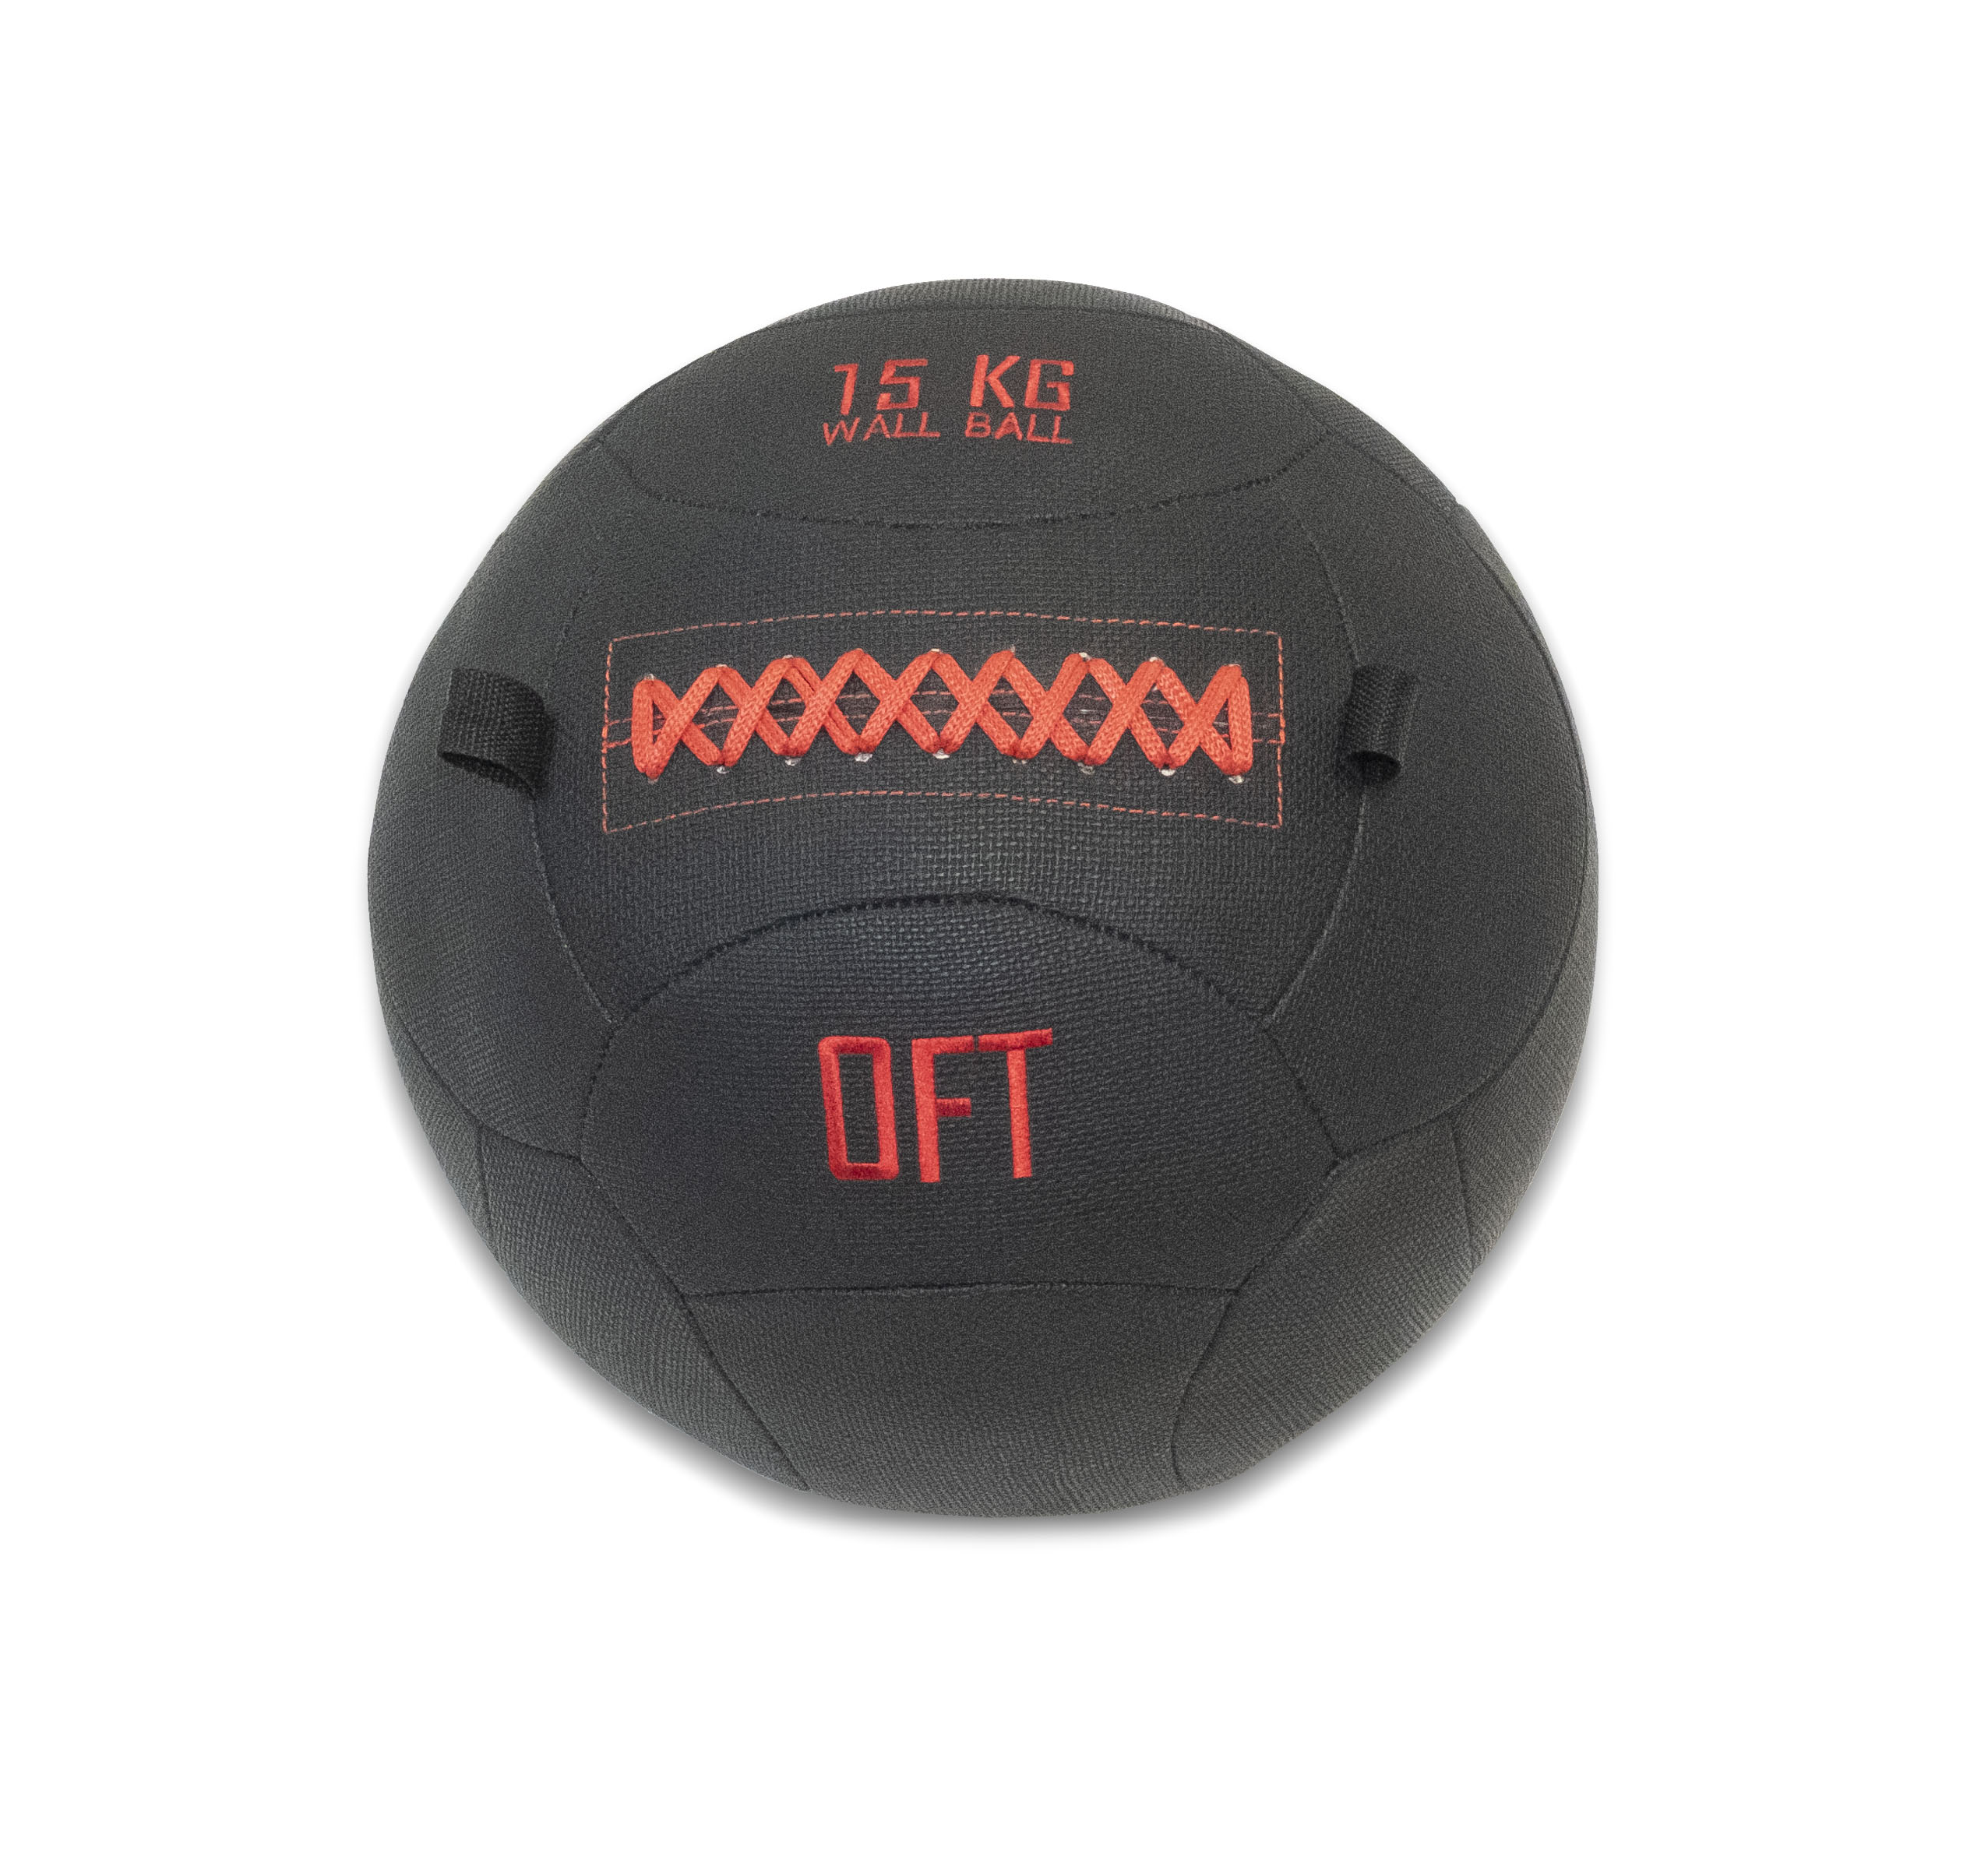 Тренировочный мяч Wall Ball Deluxe 15 кг Original FitTools